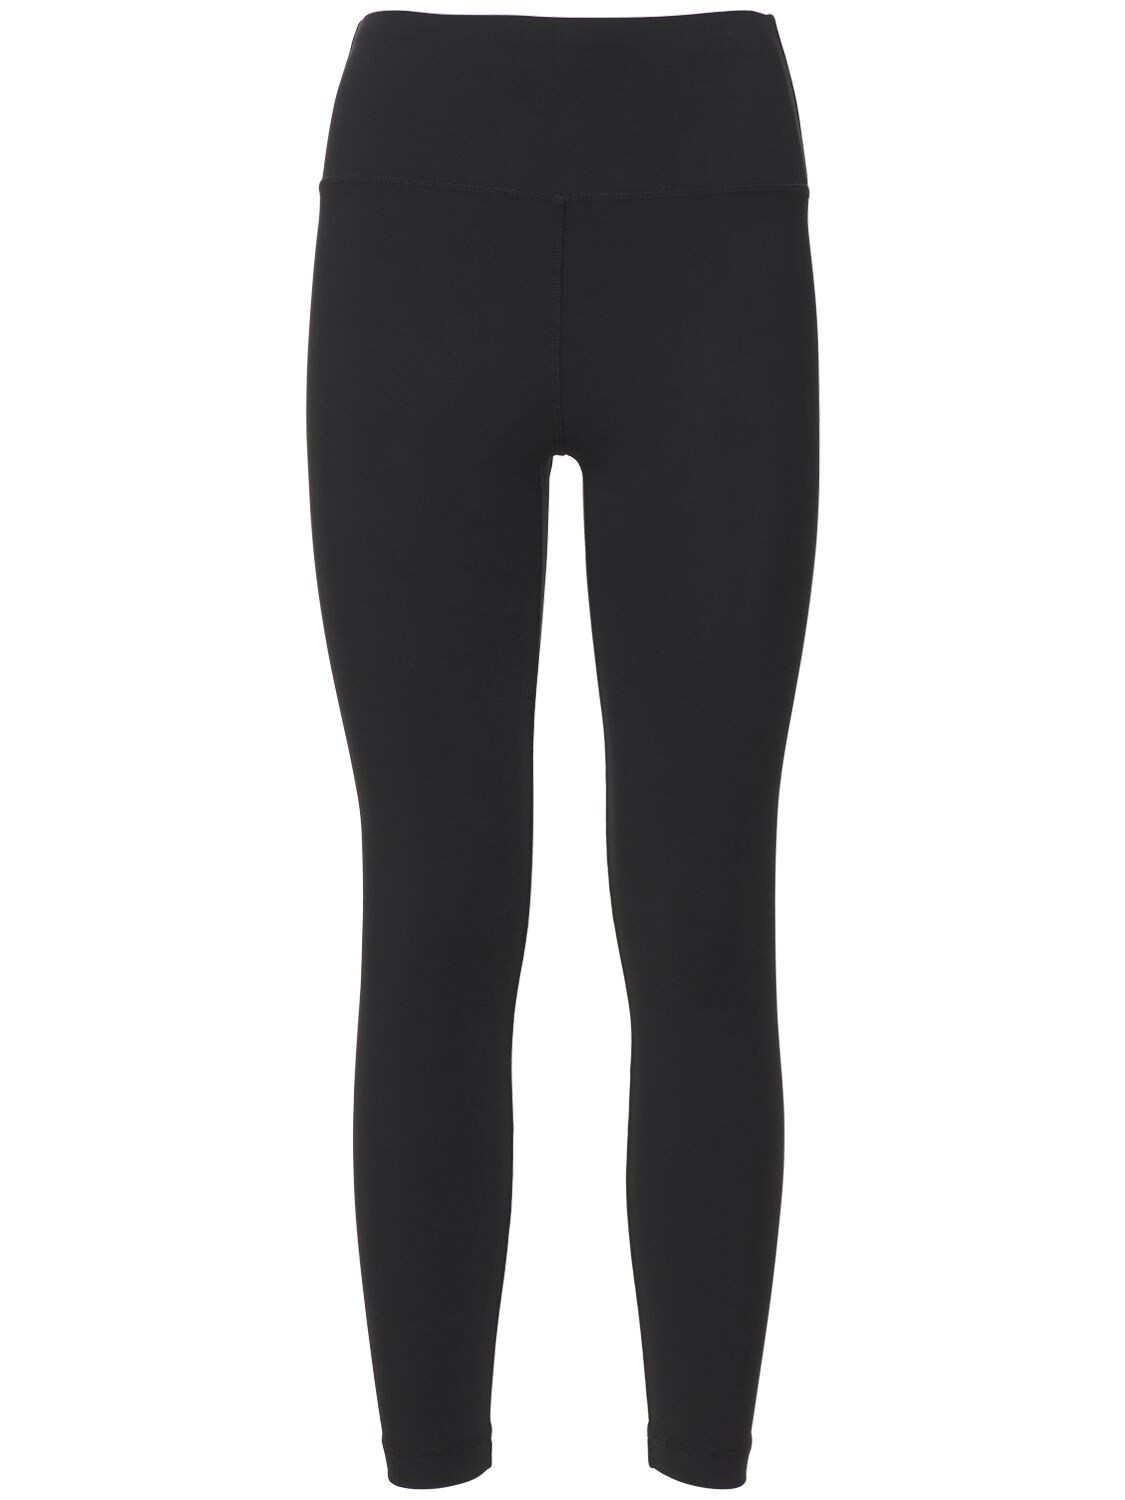 Wardrobe.nyc - Bonded stretch jersey leggings - Black | Luisaviaroma